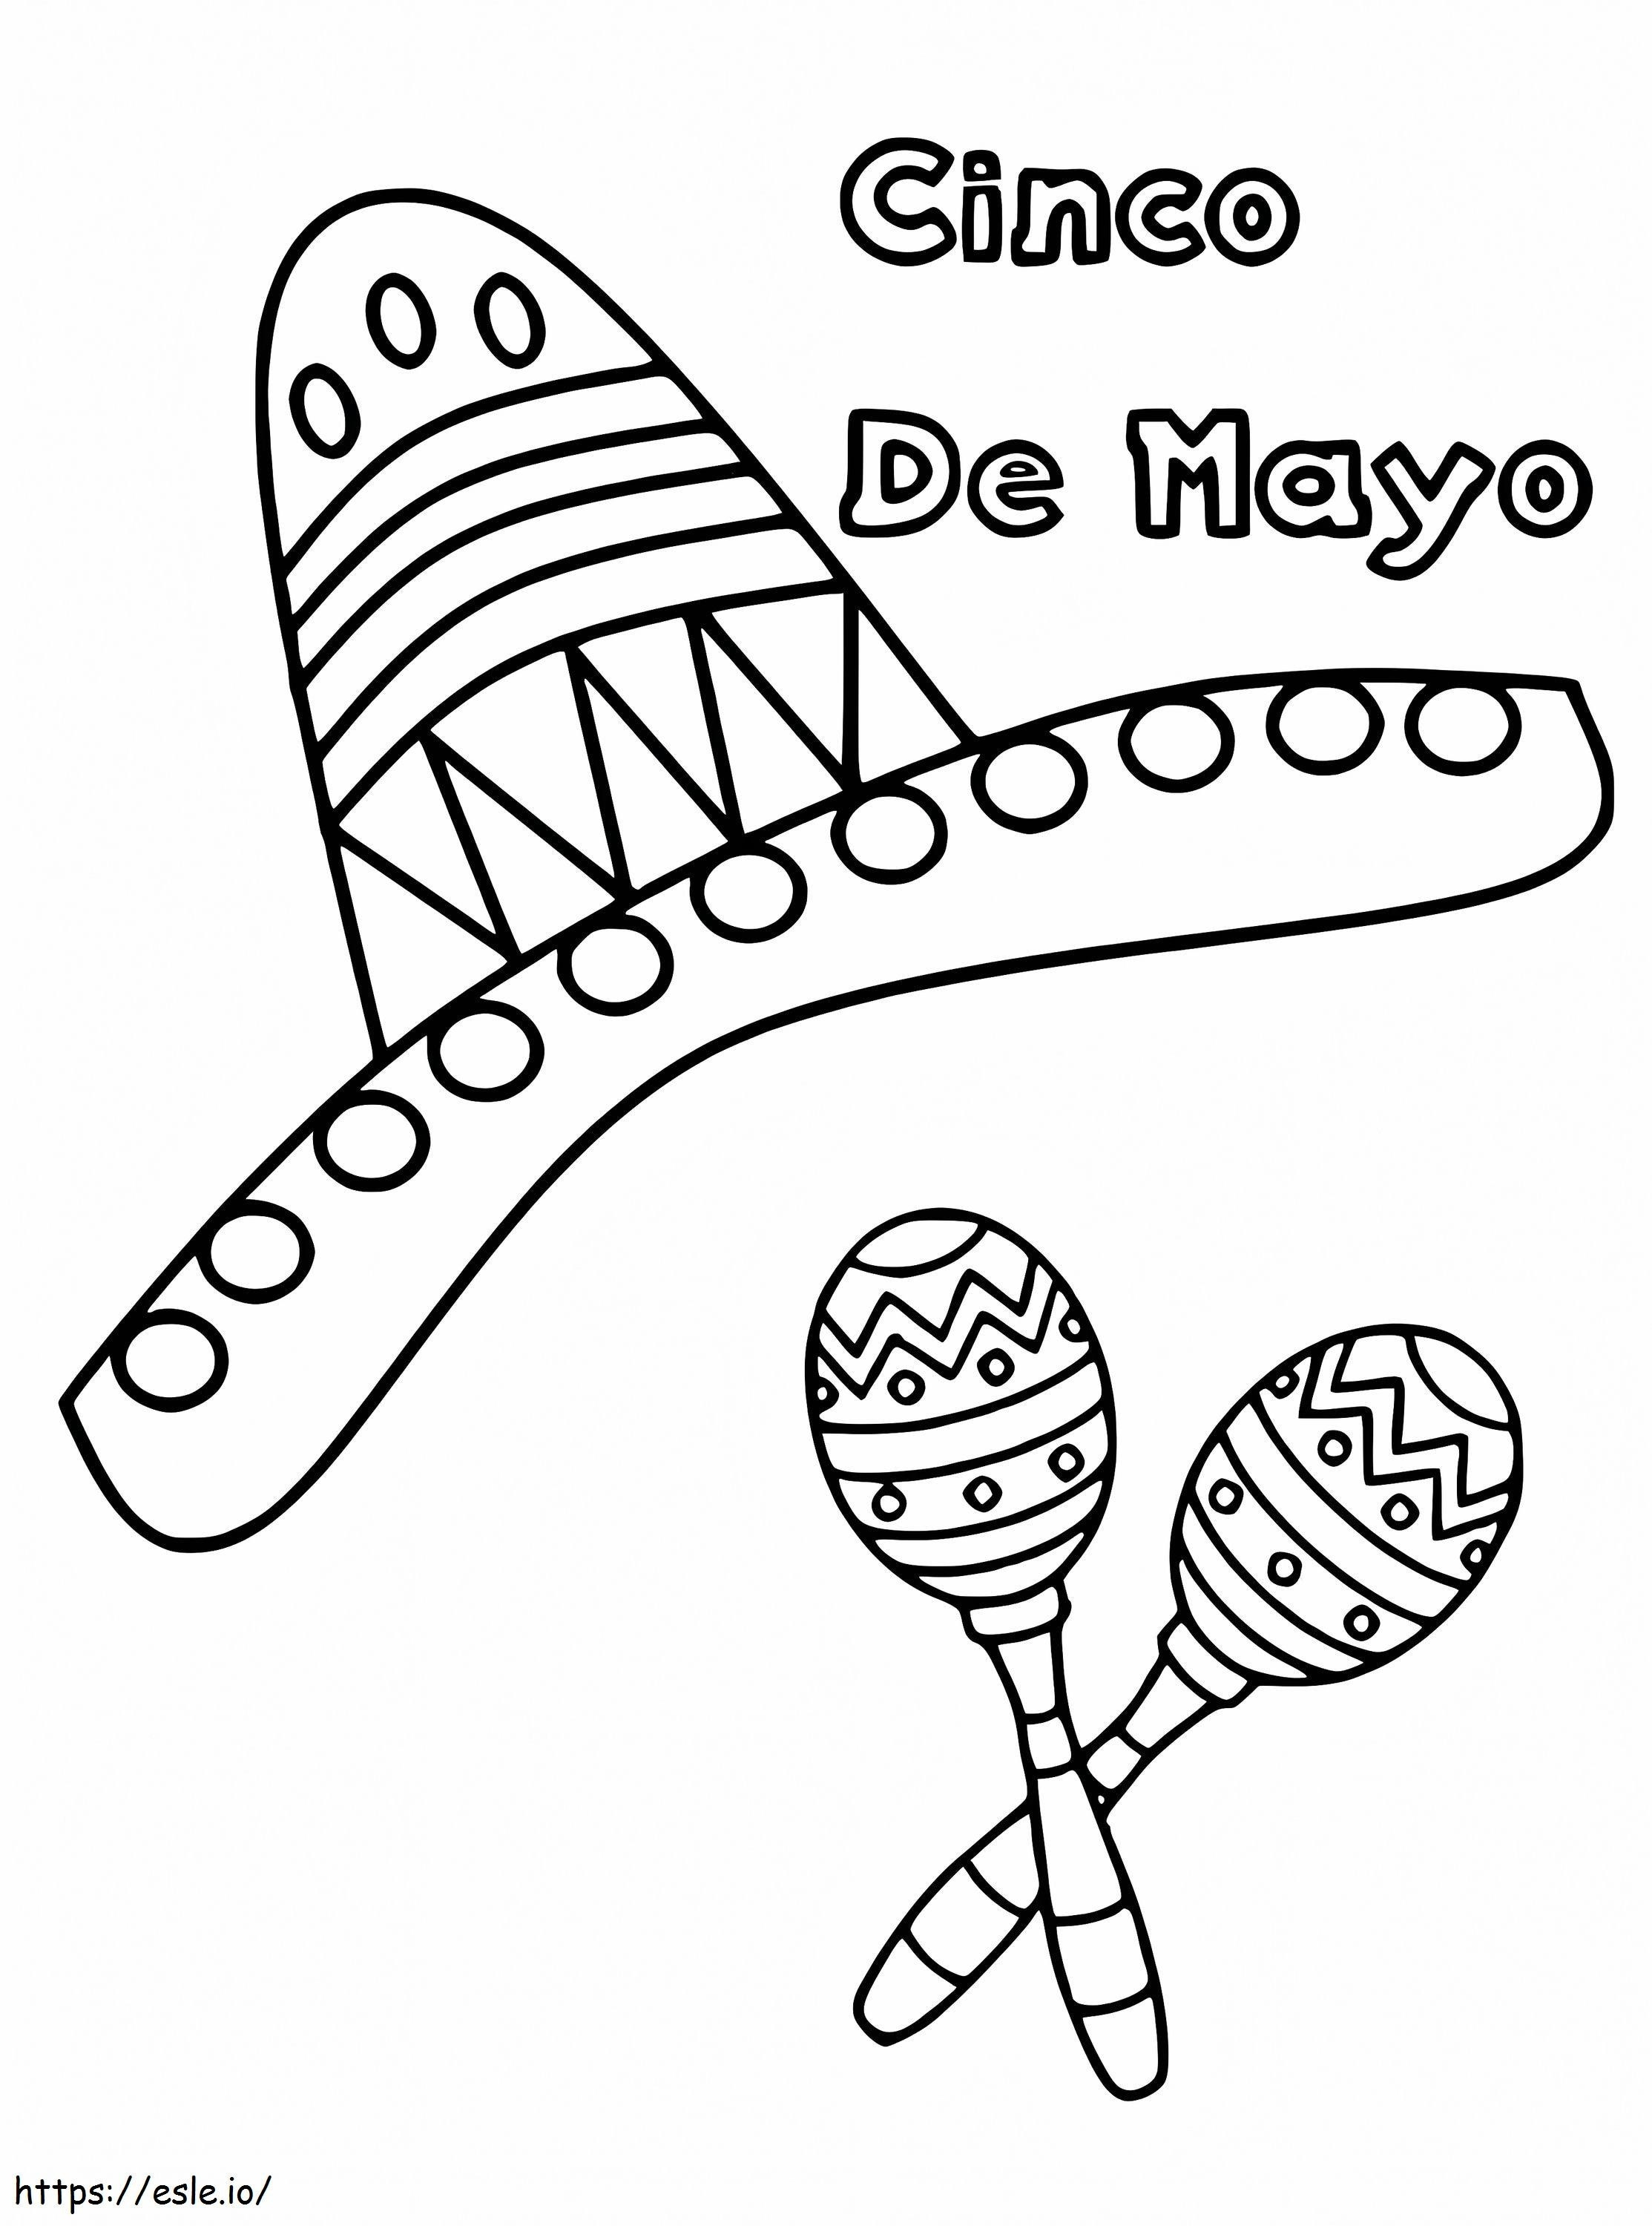 Cinco De Mayo-Sombrero 1 kleurplaat kleurplaat